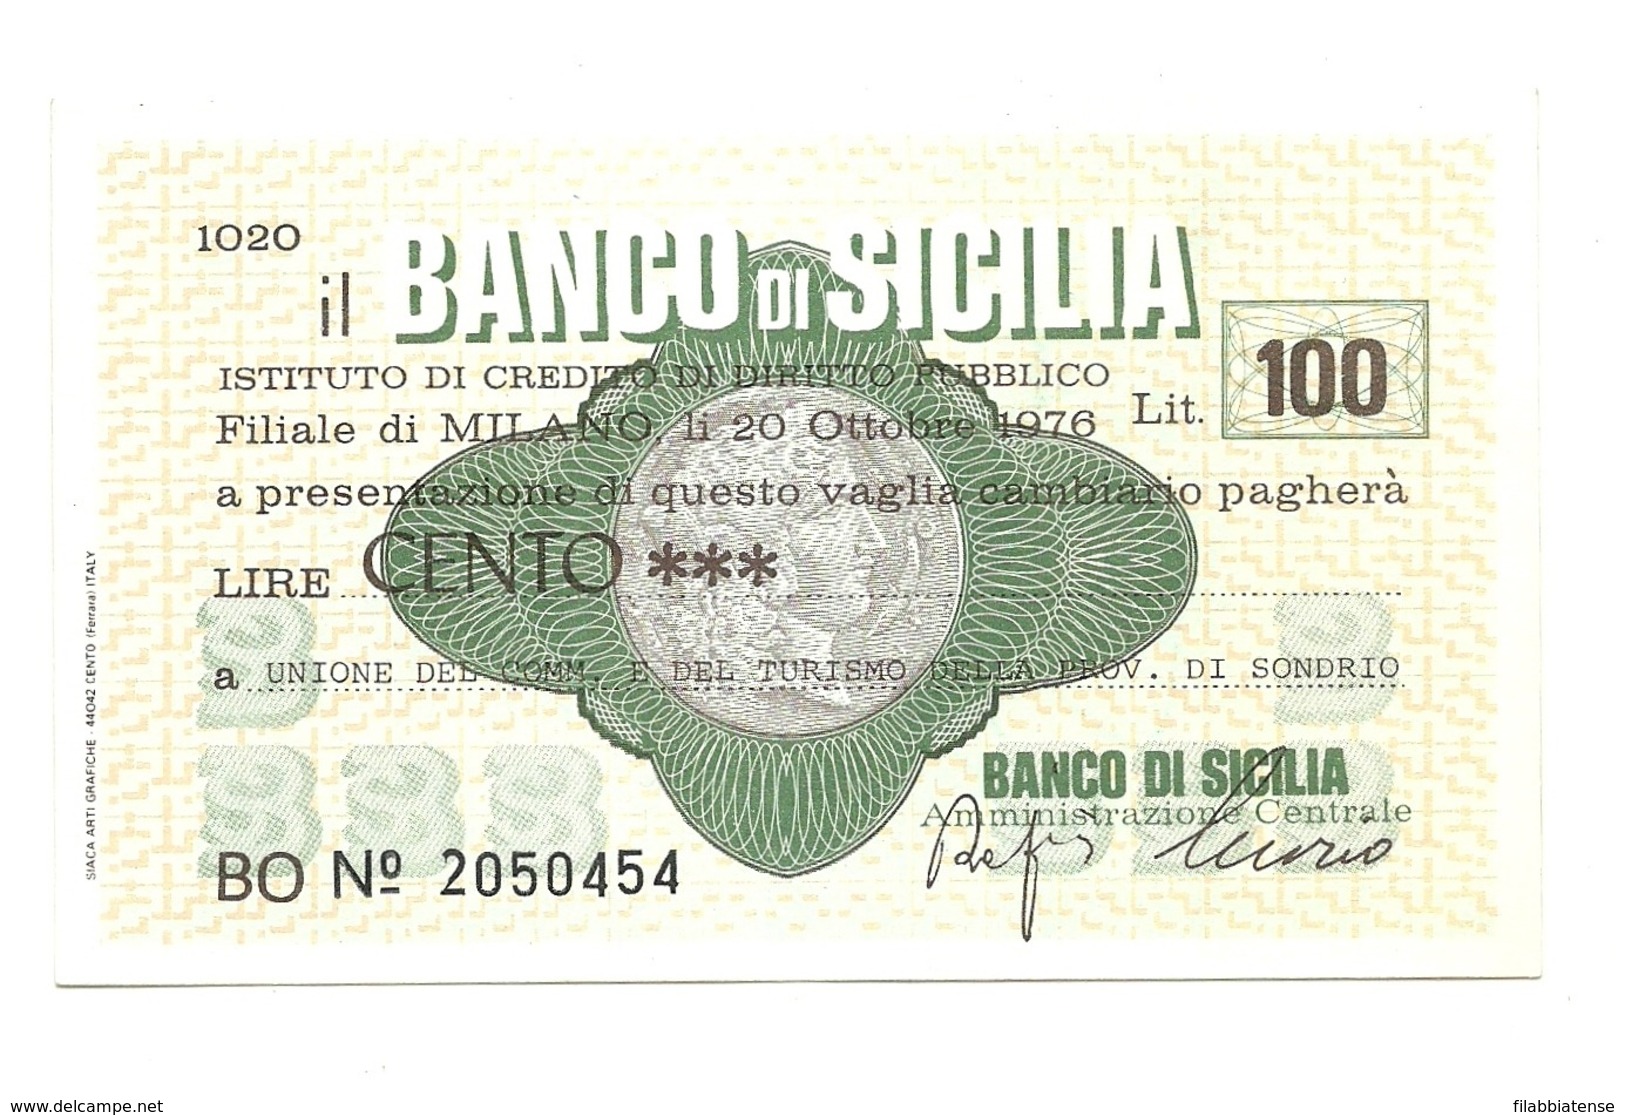 1976 - Italia - Banco Di Sicilia - Unione Del Commercio E Del Turismo Della Provincia Di Sondrio ---- - [10] Cheques Y Mini-cheques